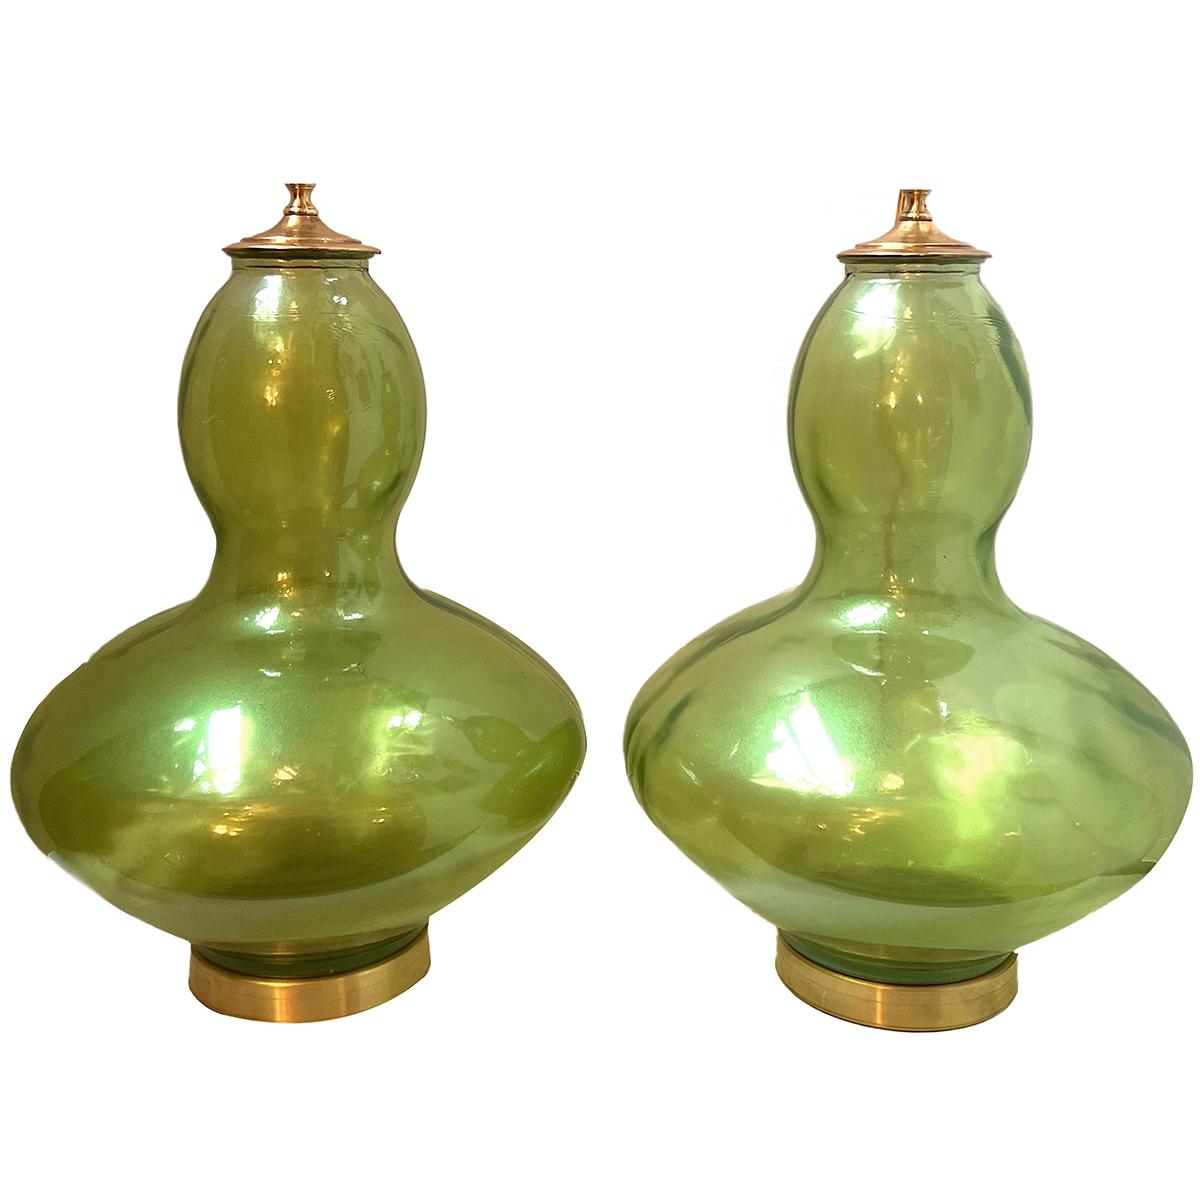 Paire de lampes en verre soufflé de Murano, datant des années 1960, avec des bases dorées.

Mesures :
Hauteur du corps : 20.5
Hauteur de l'abat-jour :  31